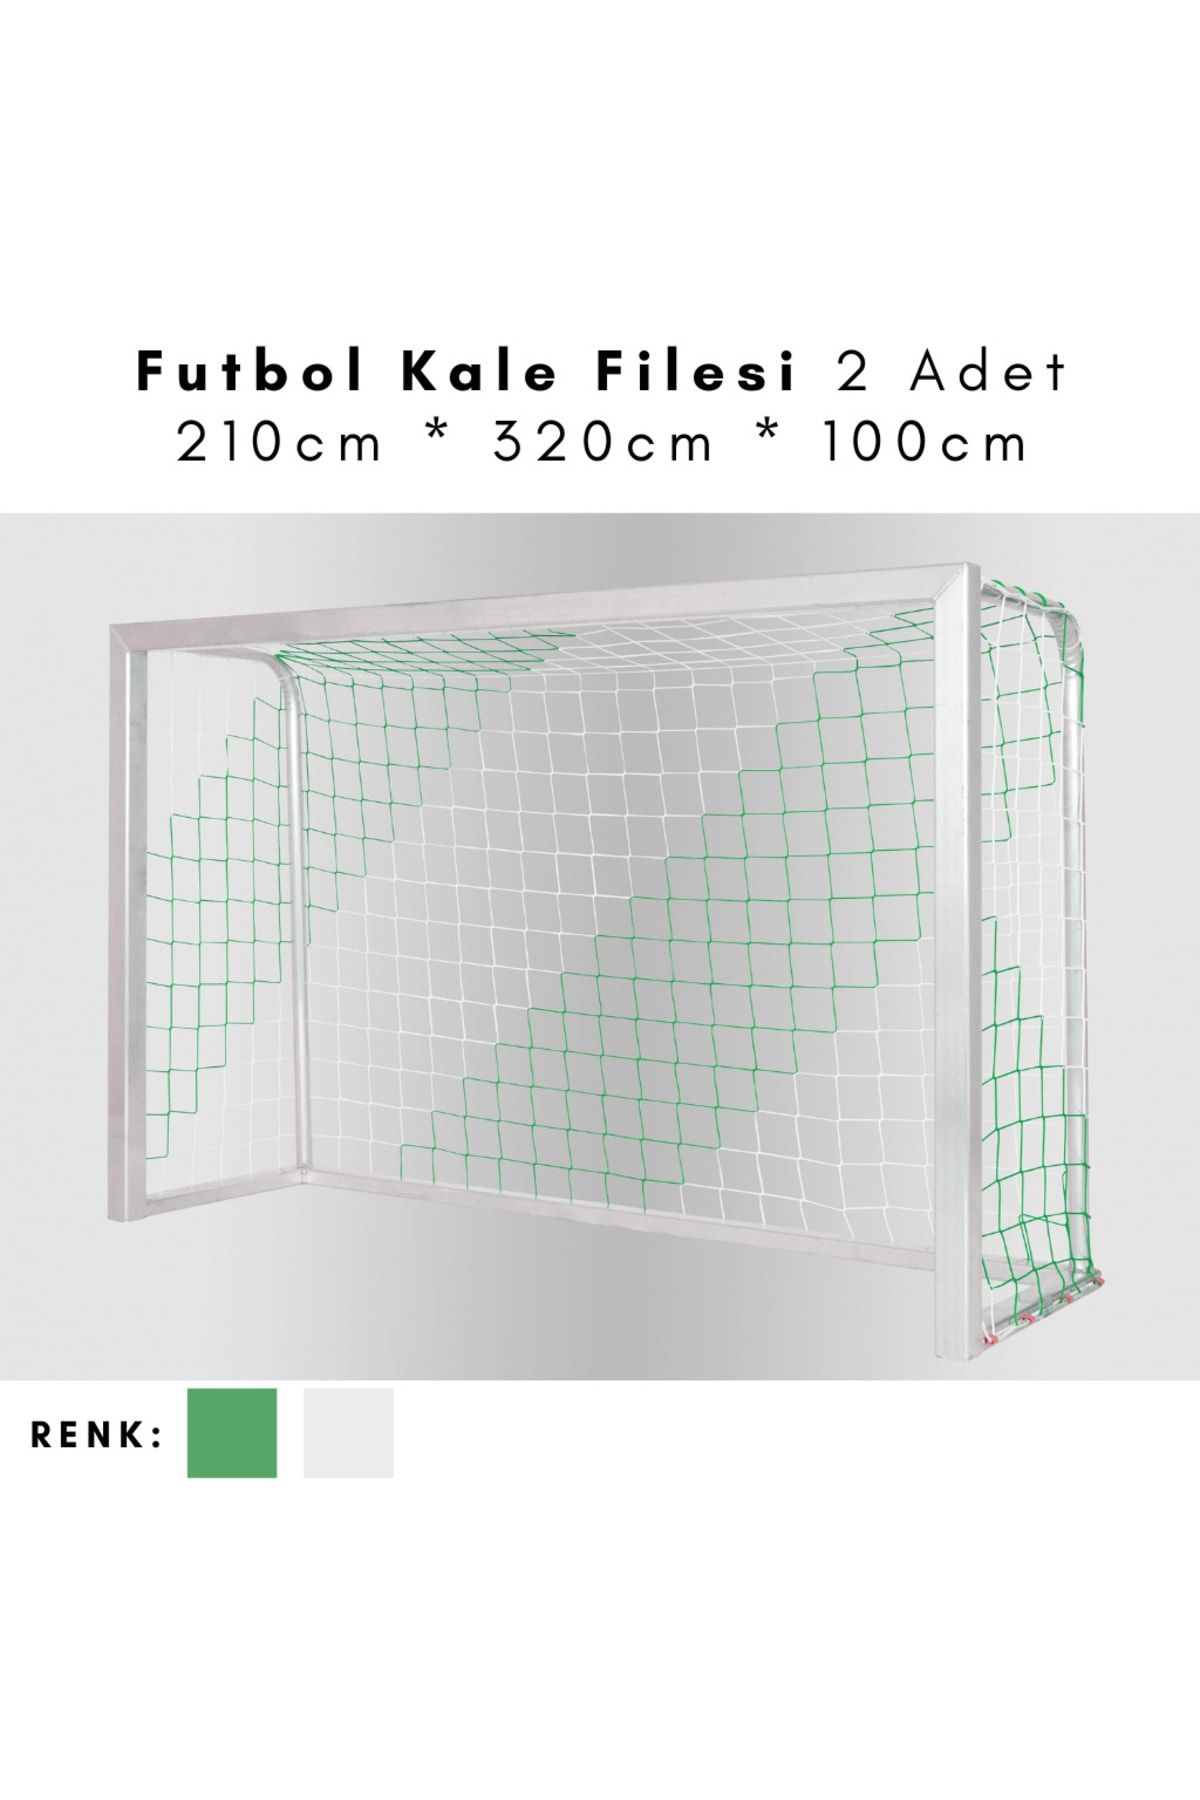 ÖZBEK Futbol Kale Filesi - Halı Saha Kale Ağı 210 * 320 * 100cm (2 Adet File)